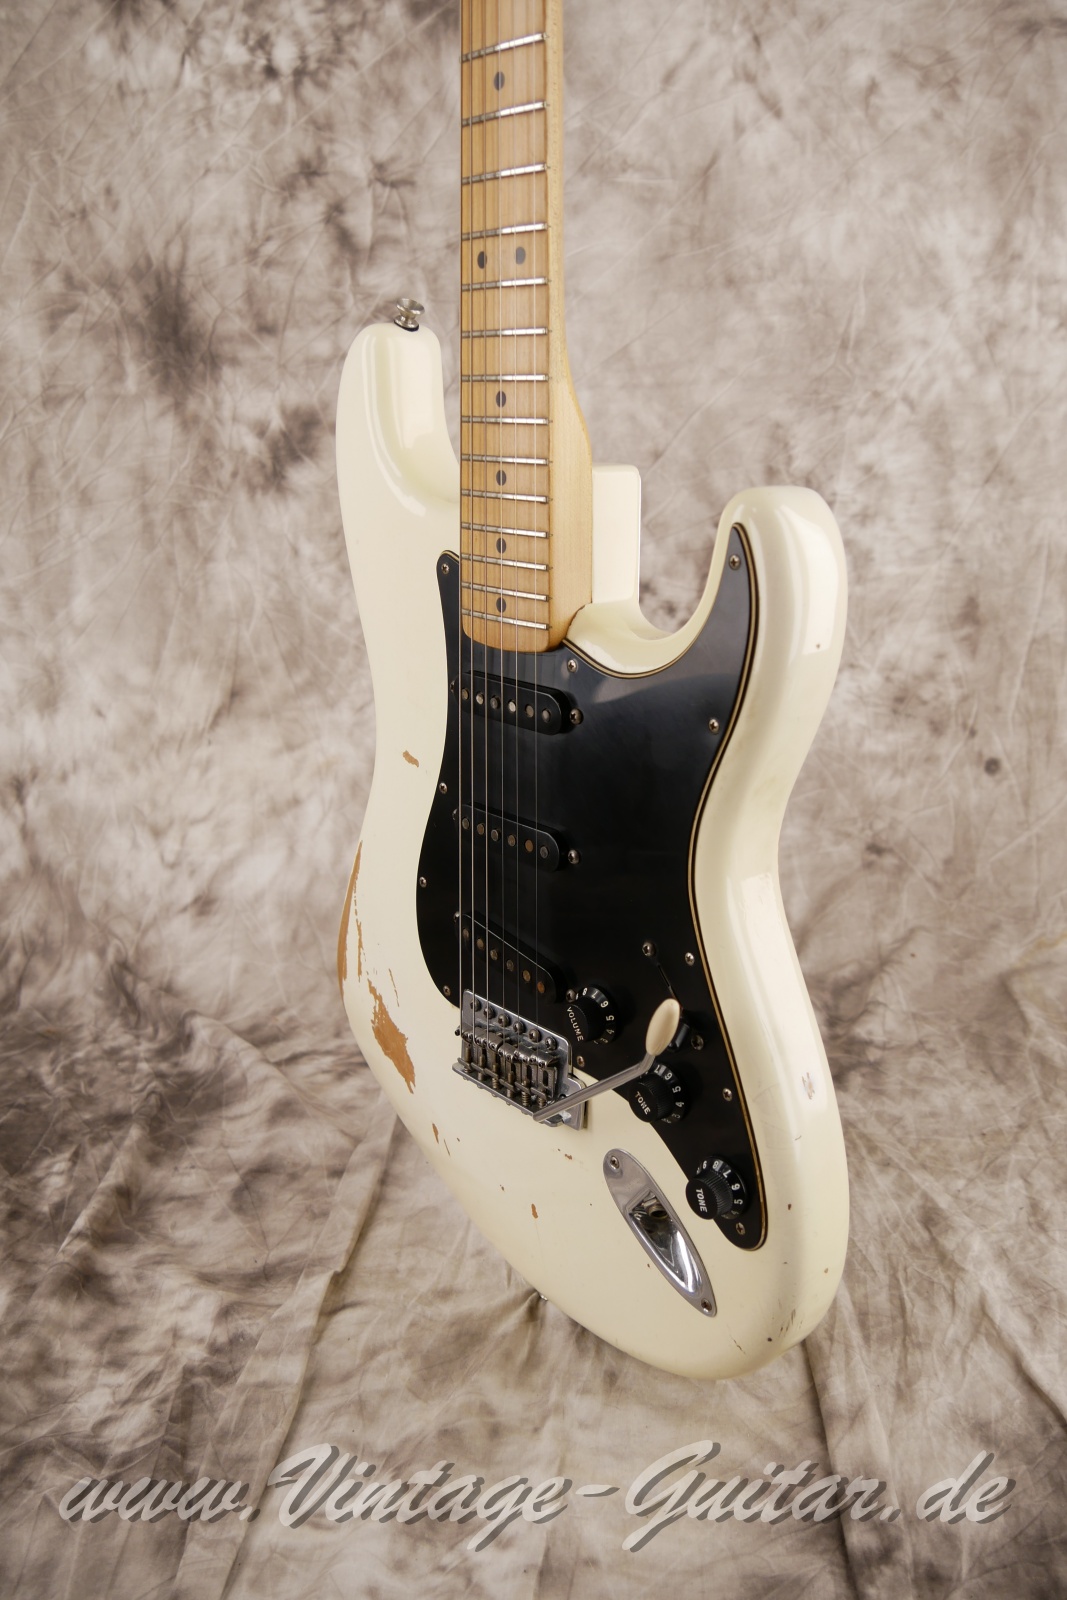 Fender-Stratocaster-roadworn-player-series-60s-reissue-2011-olympic-white-010.jpg